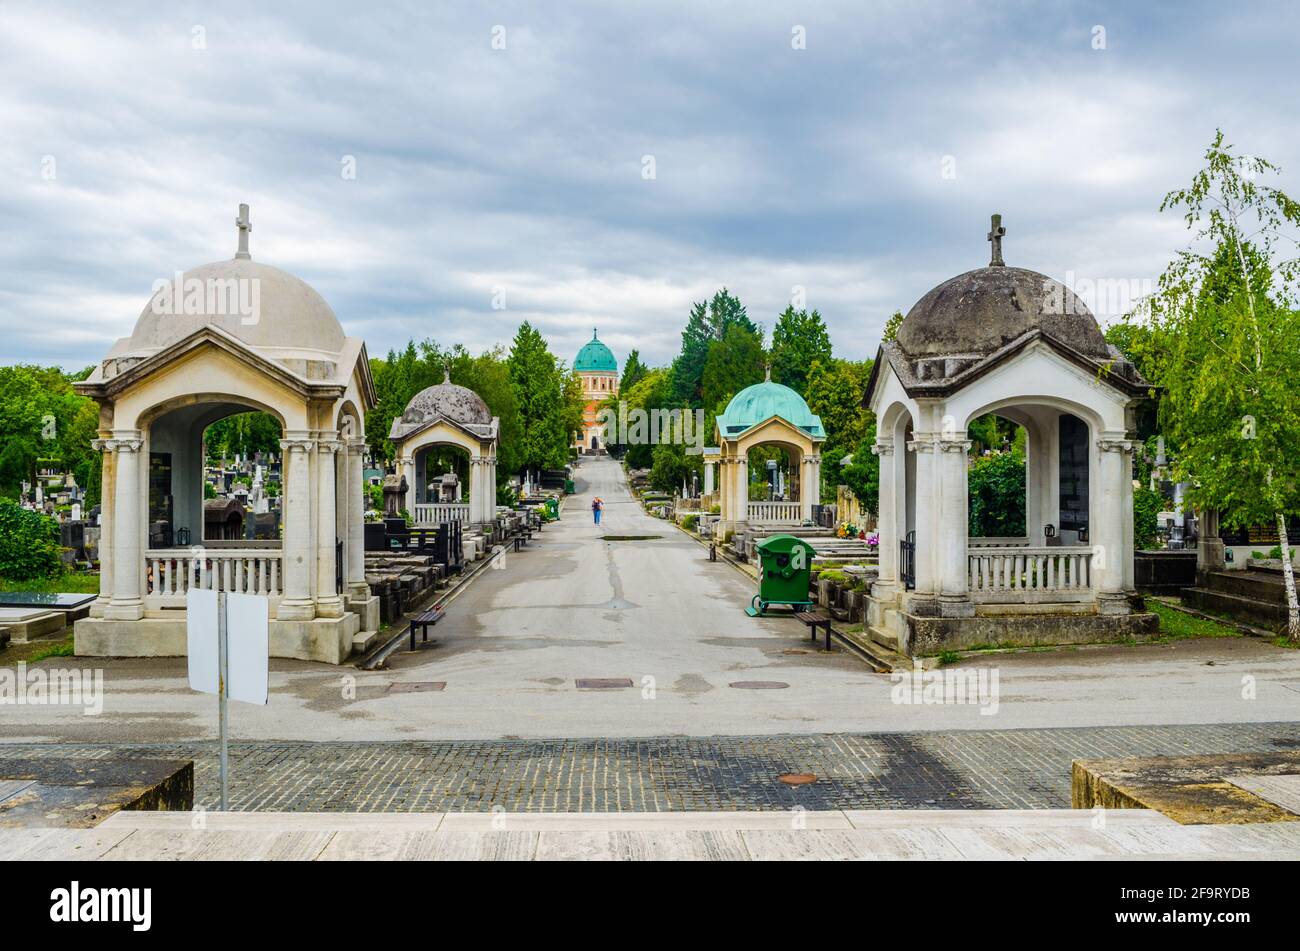 Der Friedhof Mirogoj ist ein Friedhofspark, der als eine der bemerkenswertesten Sehenswürdigkeiten in der Stadt Zagreb gilt. Stockfoto